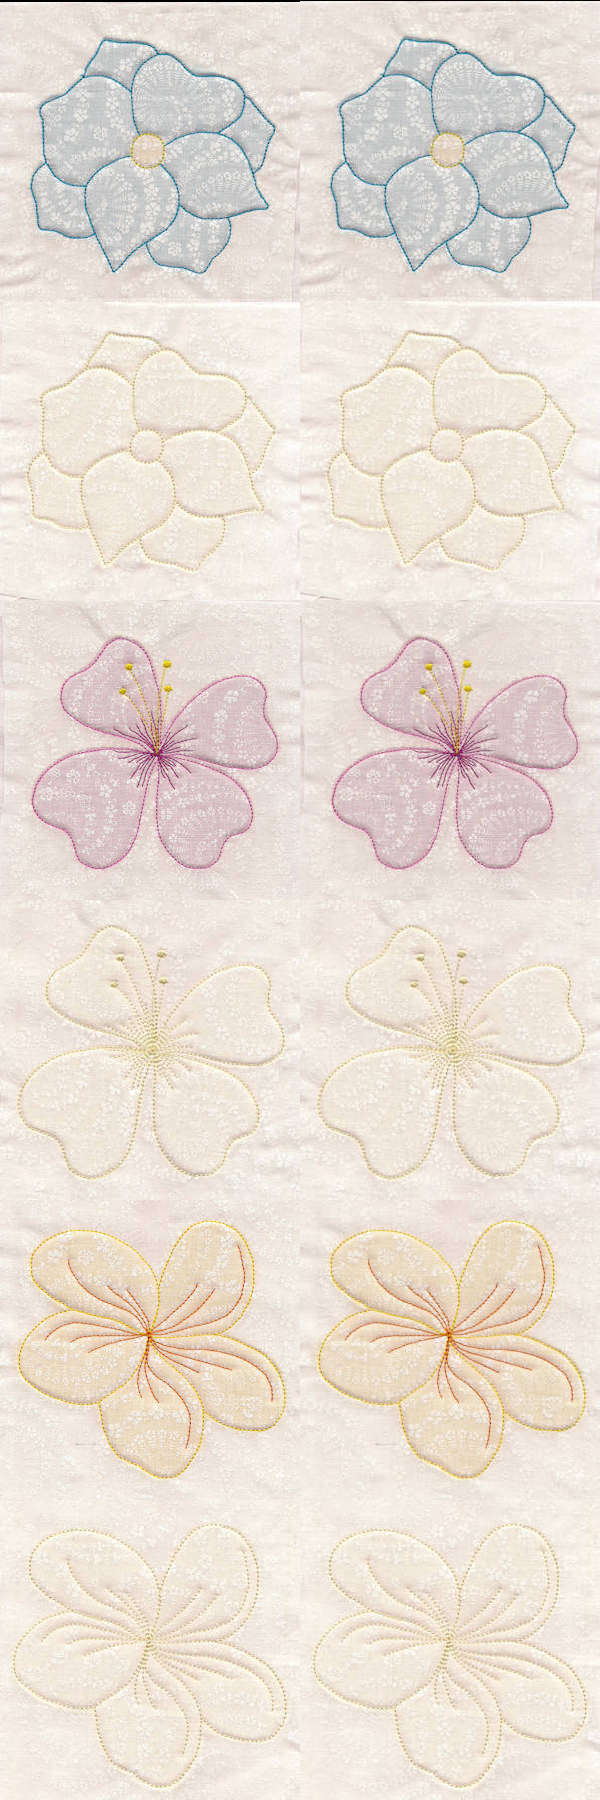 True Trapunto Flowers Embroidery Machine Design Details